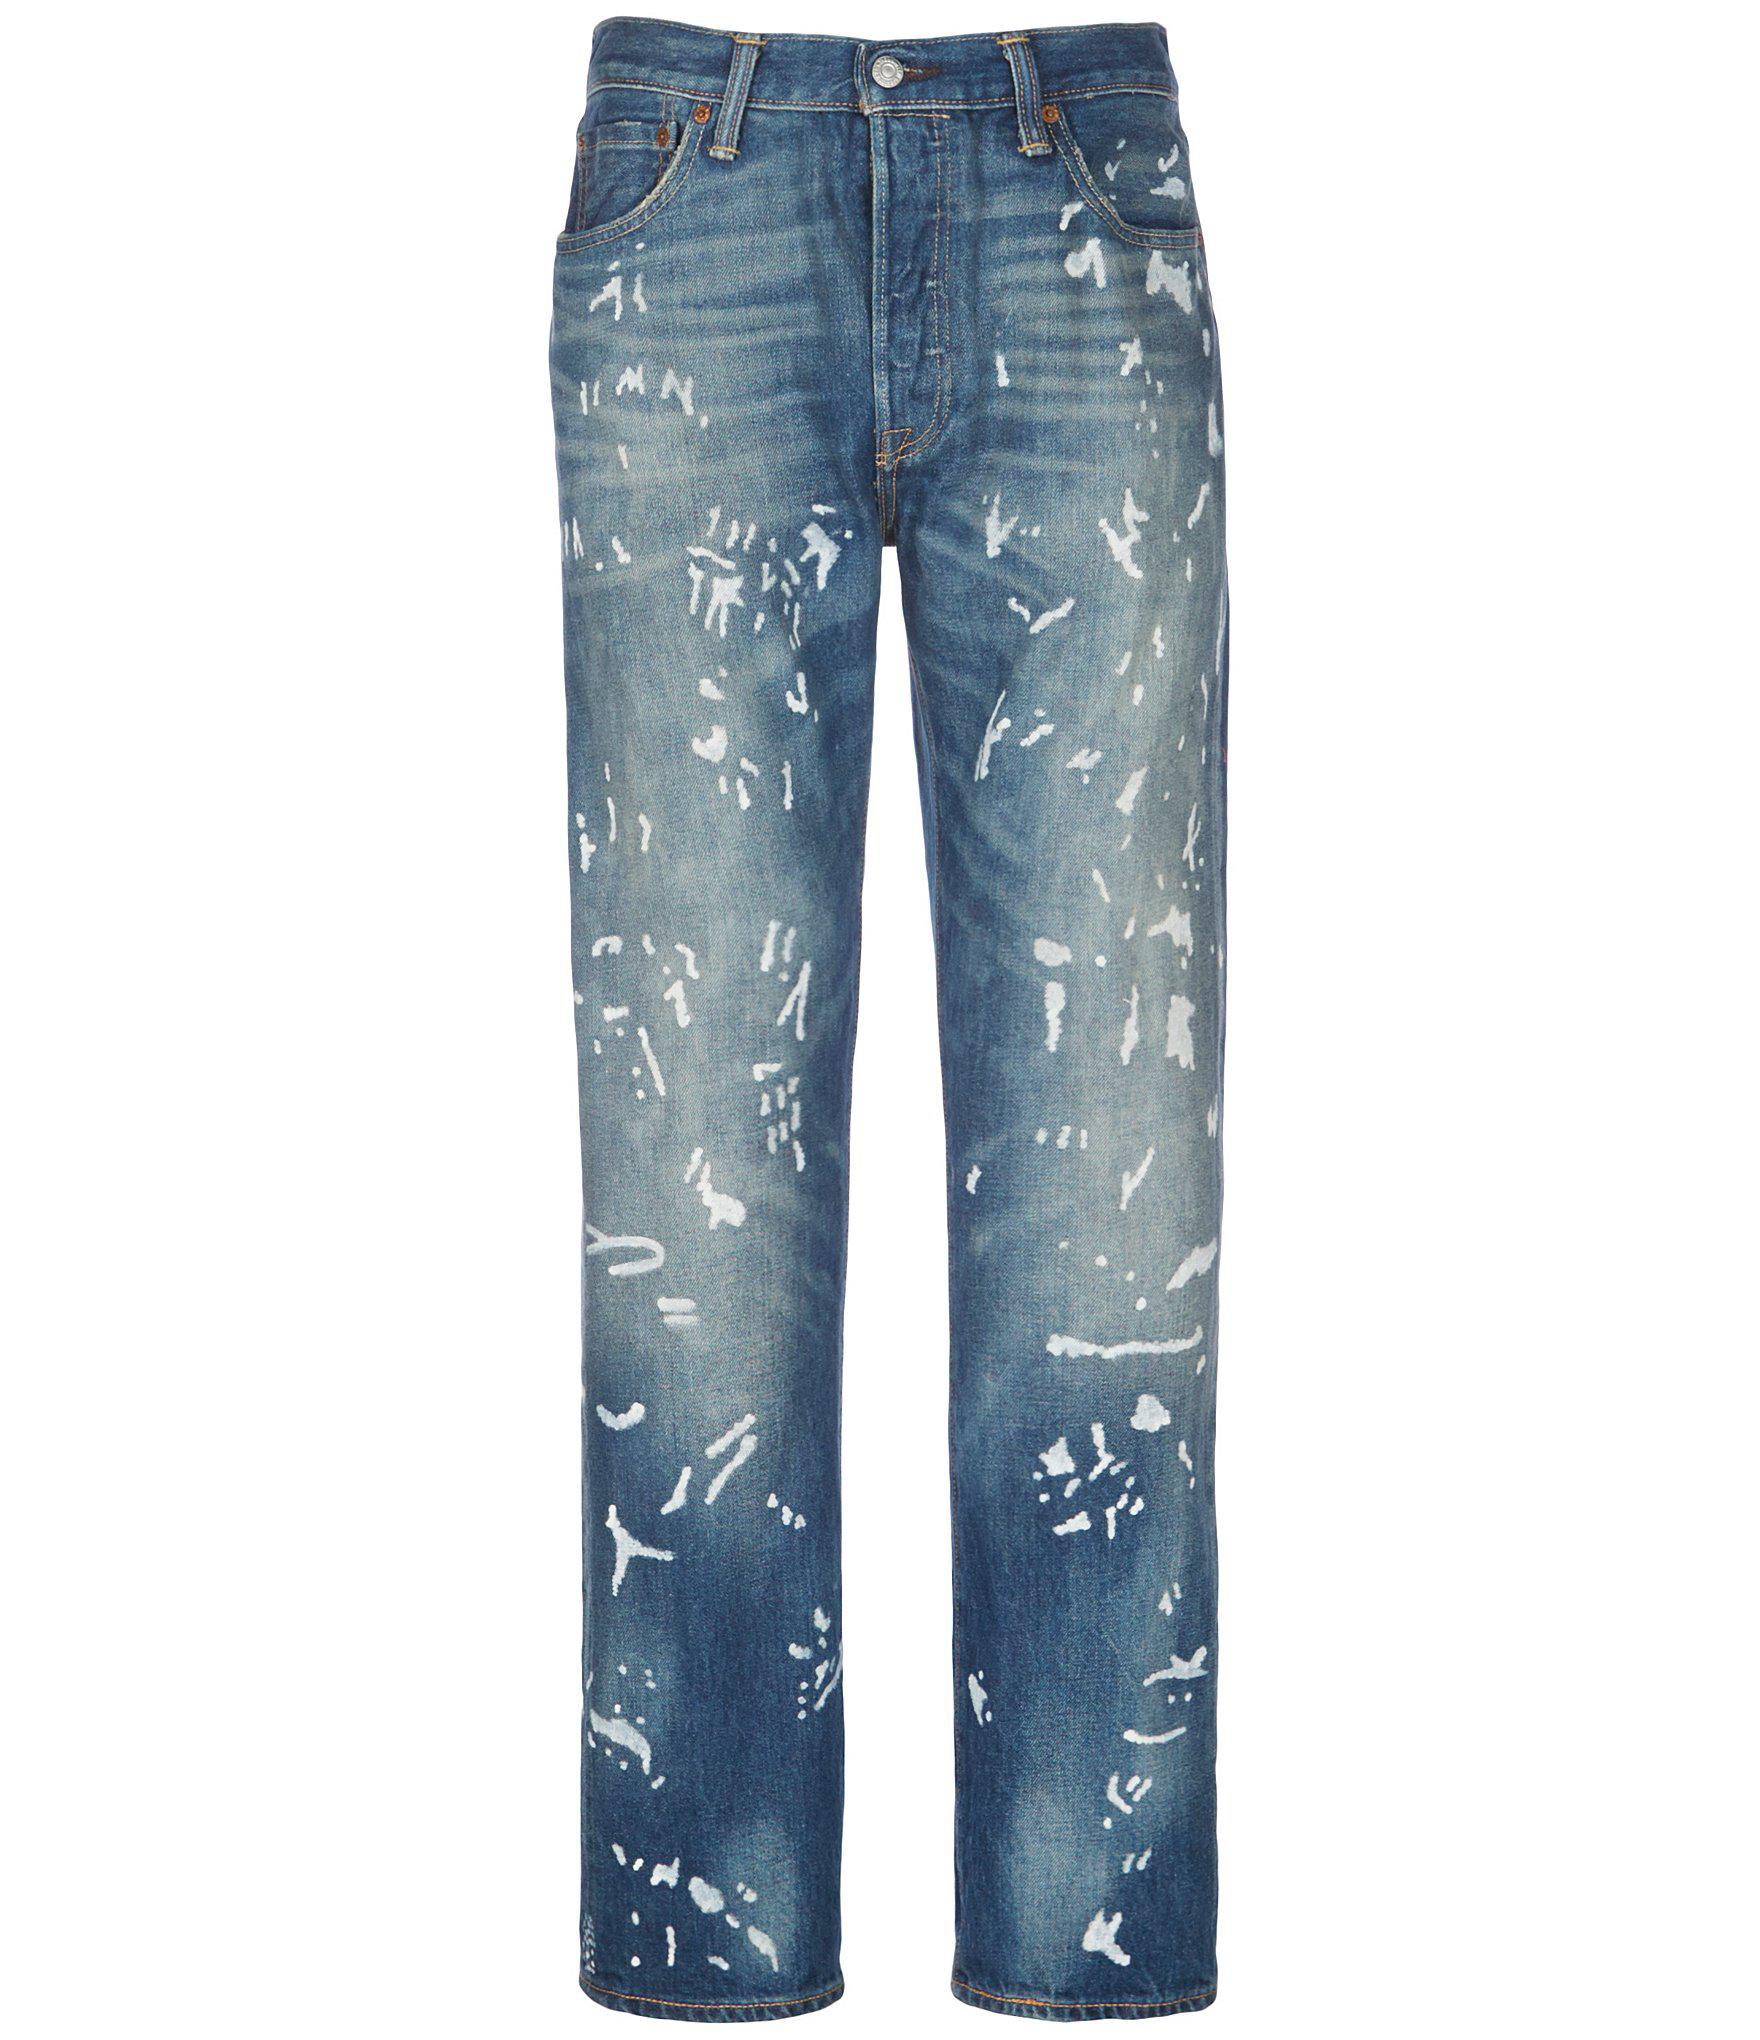 levis paint splatter jeans